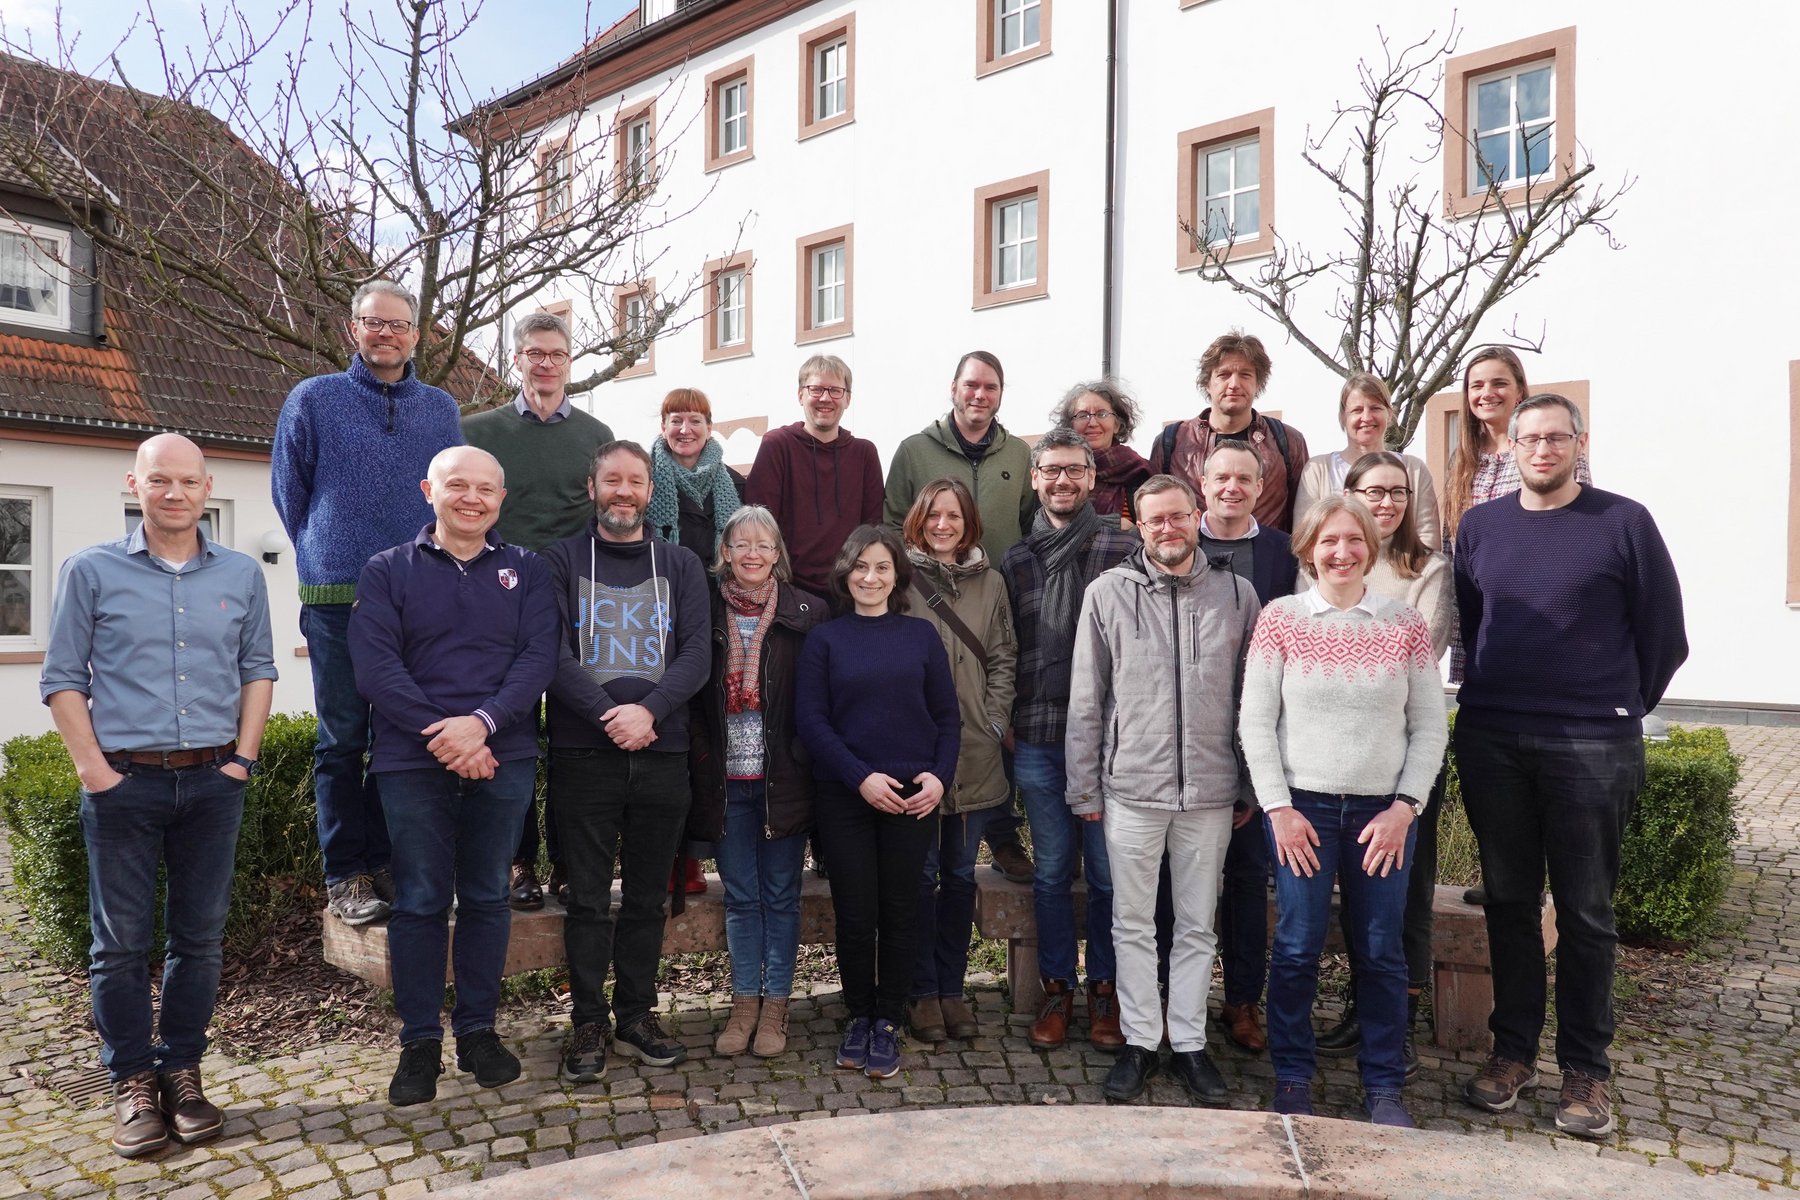 Gruppenbild mit den Teilnehmerinnen und Teilnehmern an der Klausurtagung des Studiengangs Angewandte Mathematik im Garten des Klosters Bad Soden-Salmünster